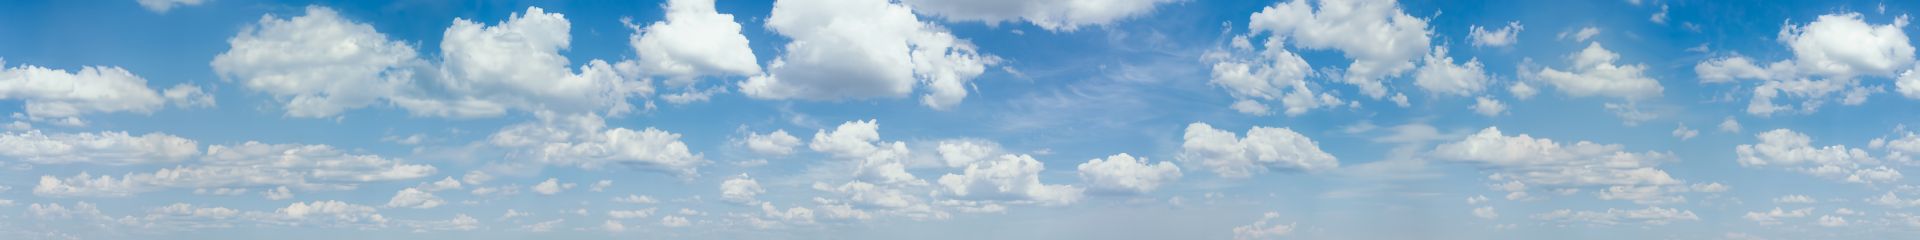 elriwa M4-H100-F - Hintergrundplatte aus PVC-Hartschaum 'Himmel mit Wolken', Höhe 100 cm, Bild F